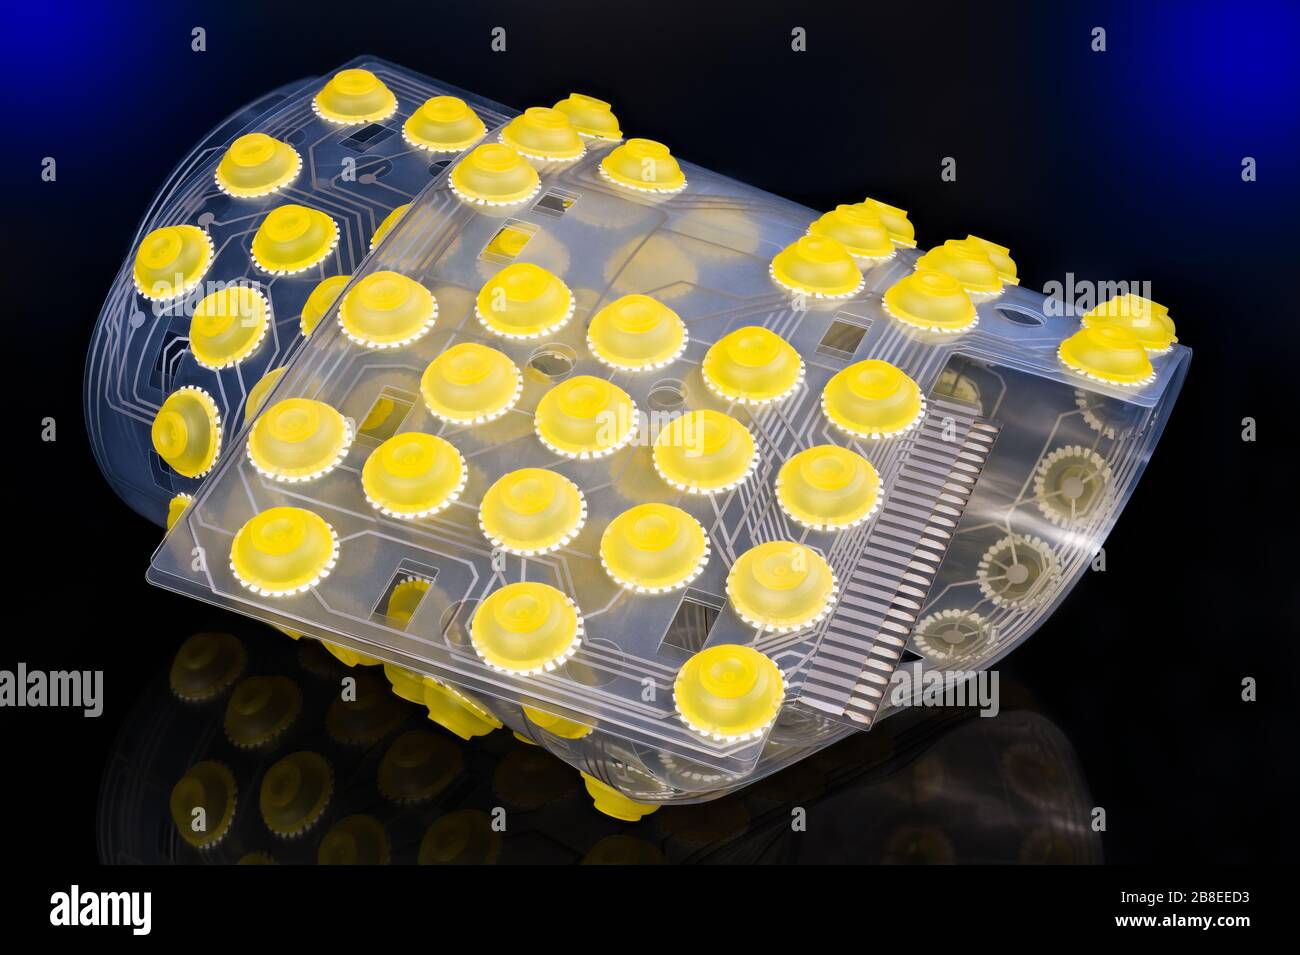 Tastiera del computer membrana in silicone arricciata. Pulsanti rotondi gialli, scheda elettronica a circuito stampato flessibile. Riflessione degli interruttori a cupola in gomma. Foto Stock